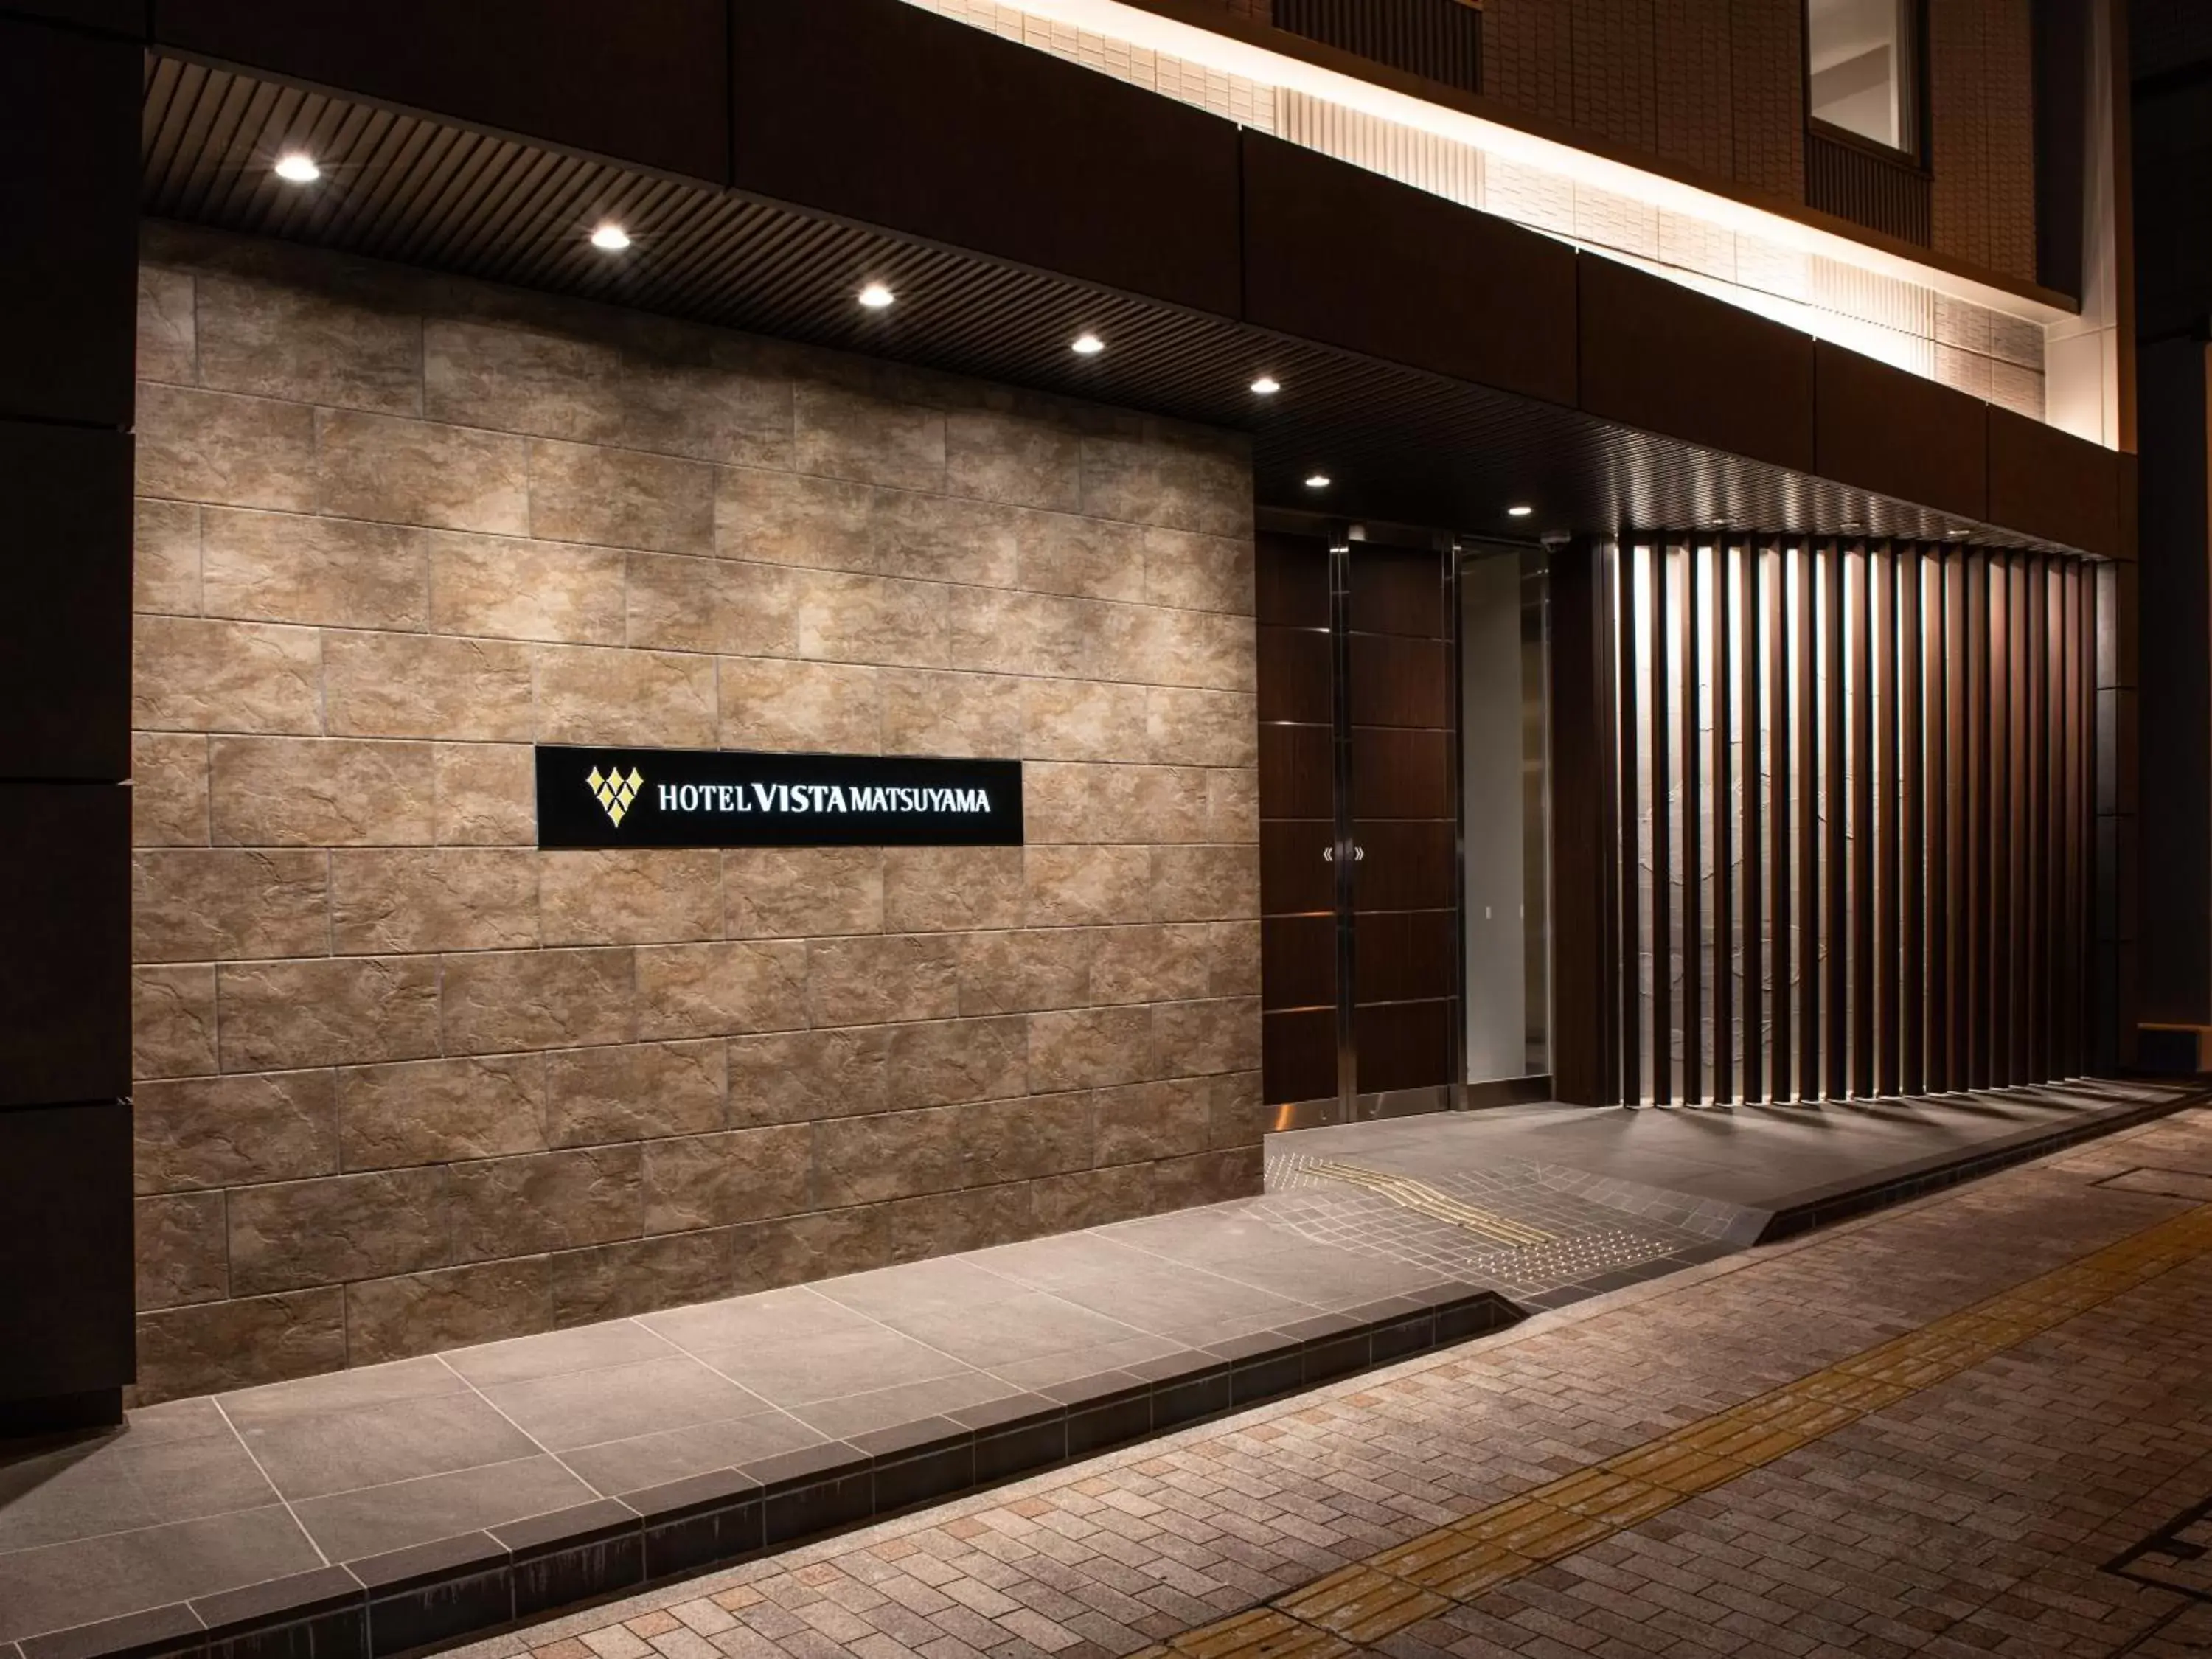 Facade/entrance in Hotel Vista Matsuyama